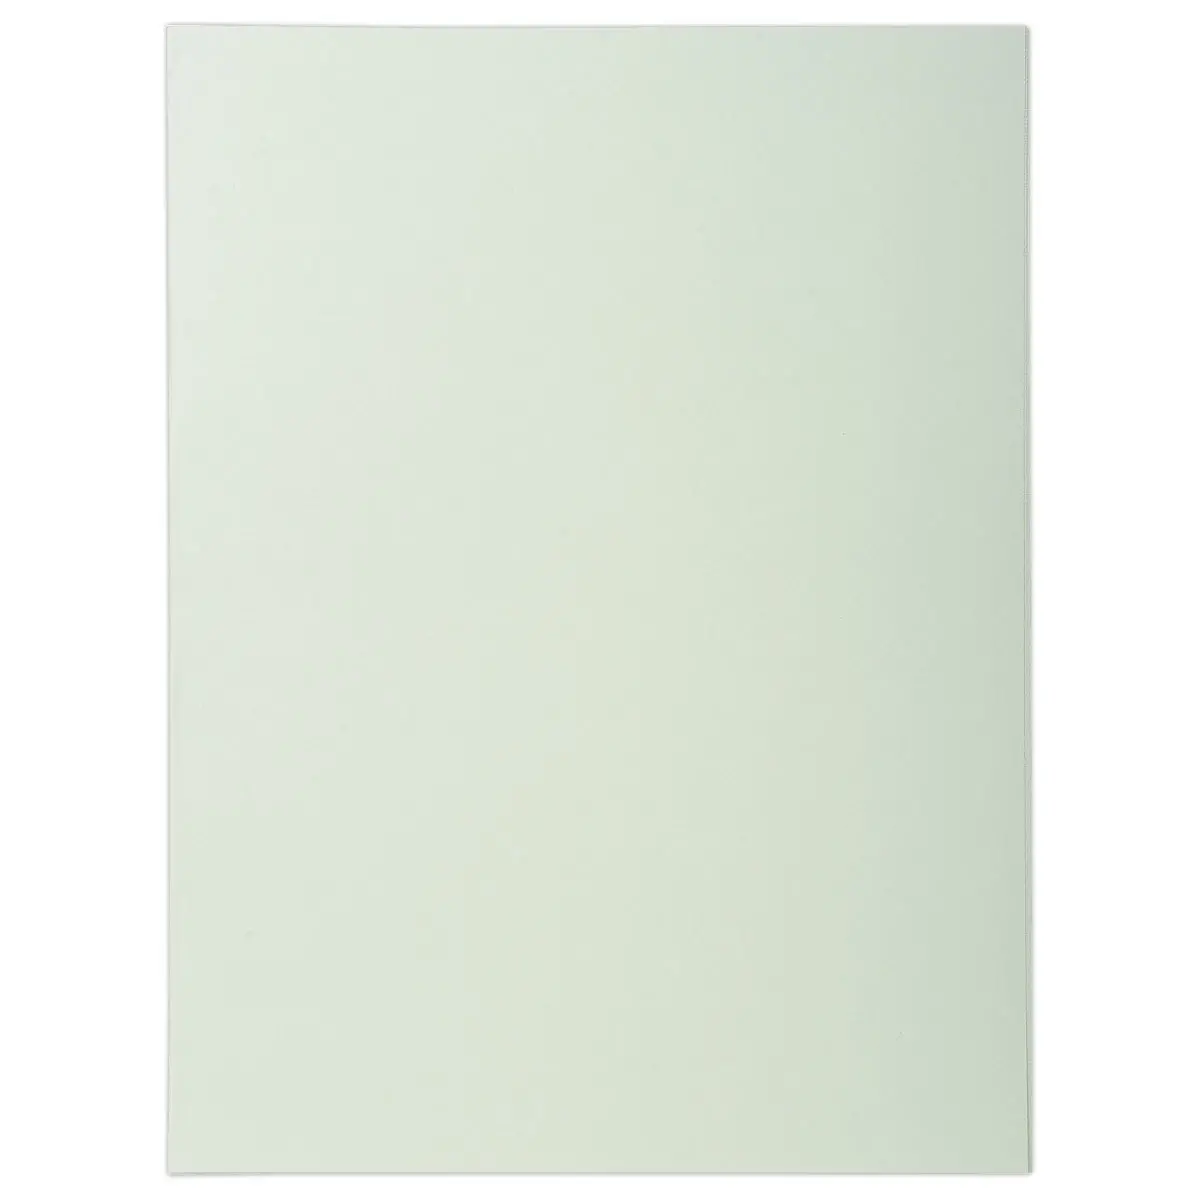 100 Chemises A4+ - gris pastel - 220g - FIDUCIAL OFFICE SOLUTIONS photo du produit